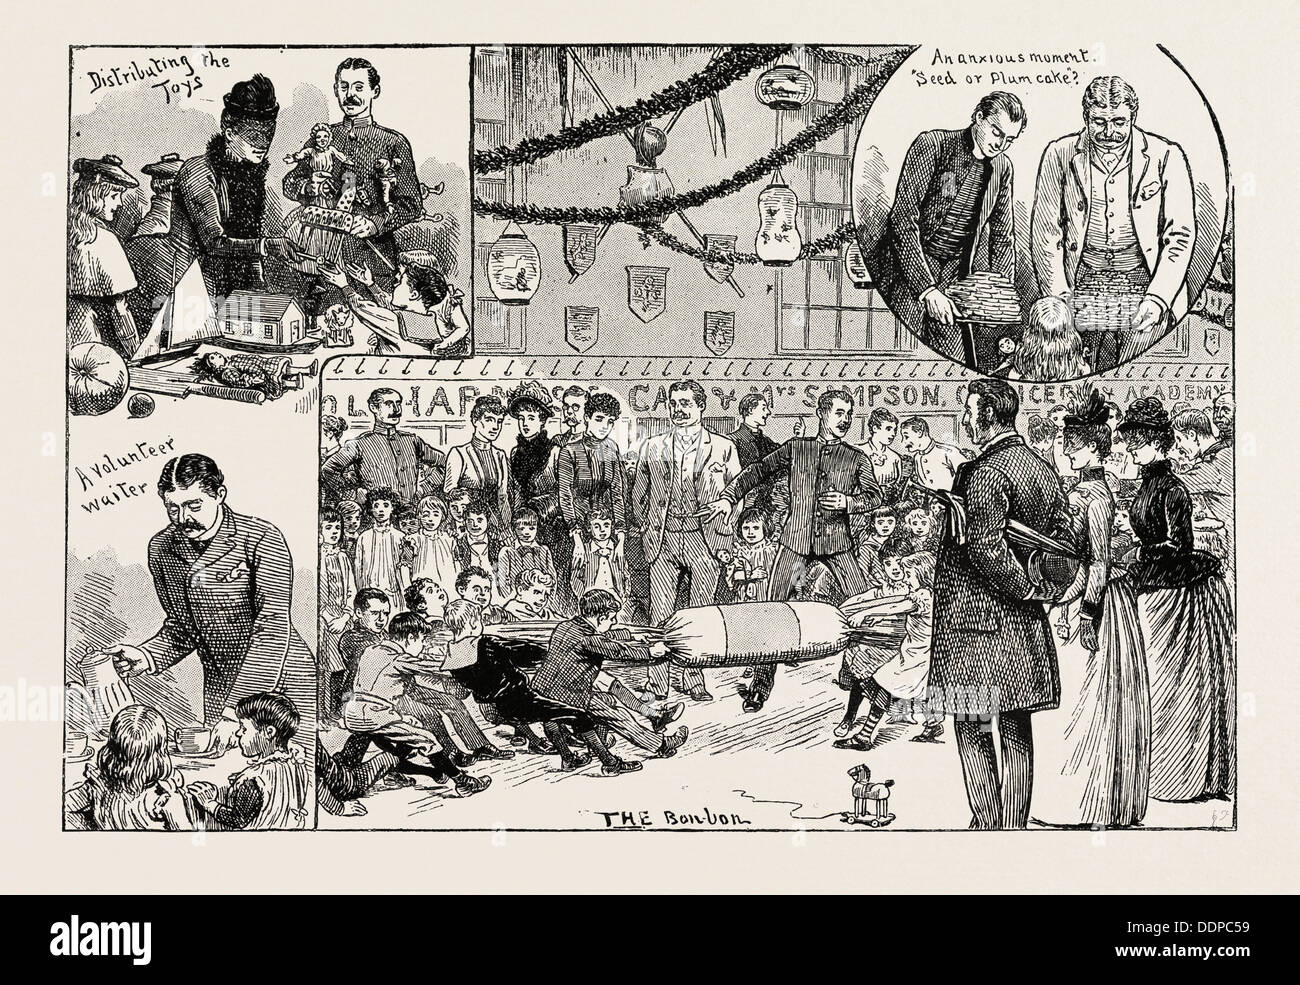 Kinder neues Jahr Partei gegeben an der ROYAL MILITARY ACADEMY, WOOLWICH, Gravur 1890, UK, Großbritannien, England, Britisch, Europa Stockfoto